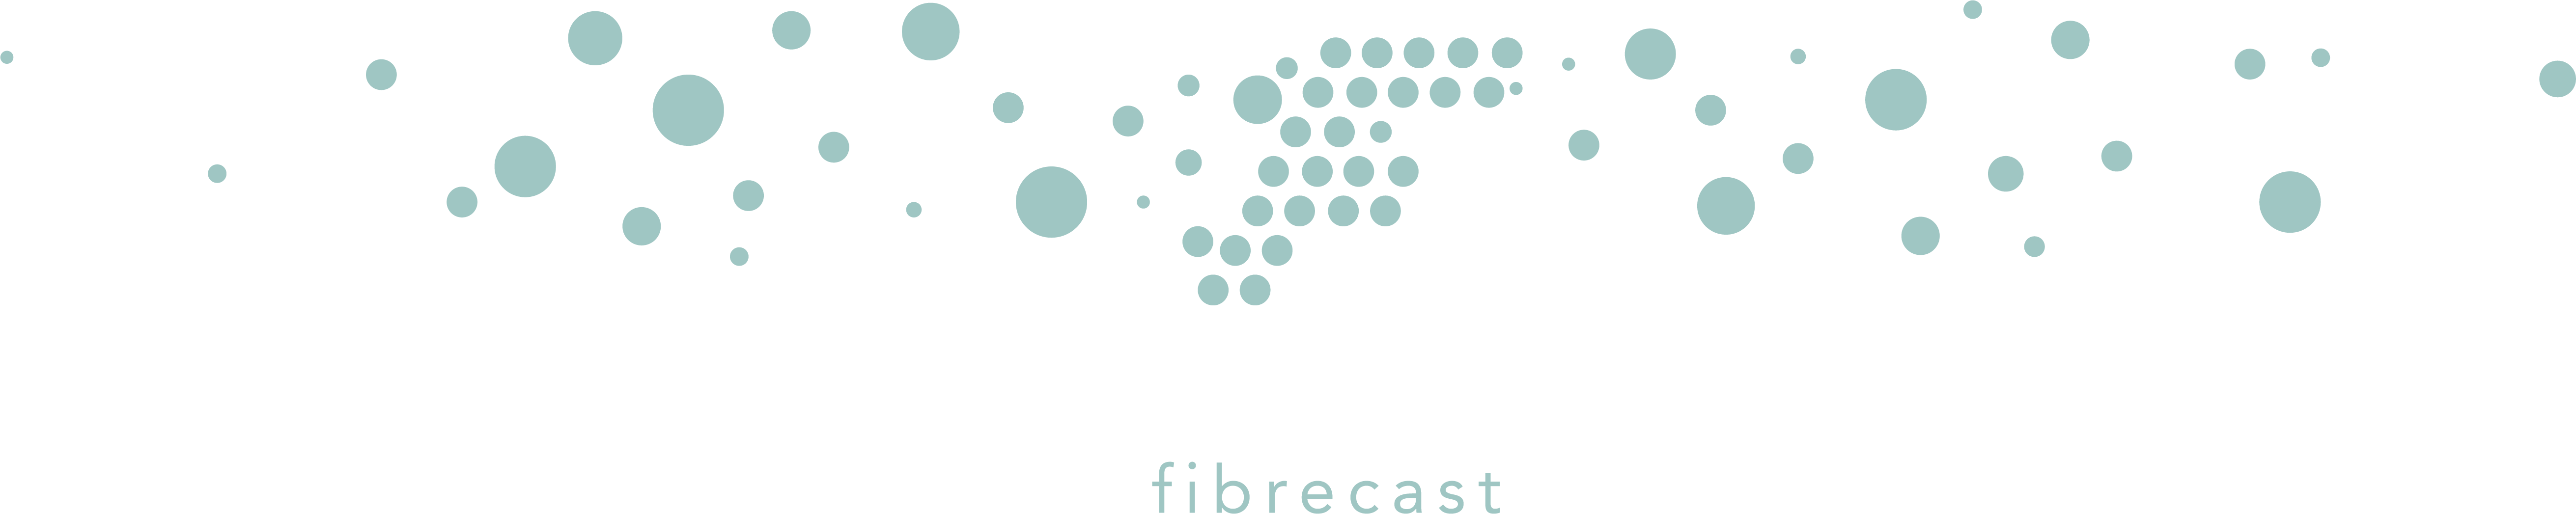 Fibrecast Logo with fibre optics pattern